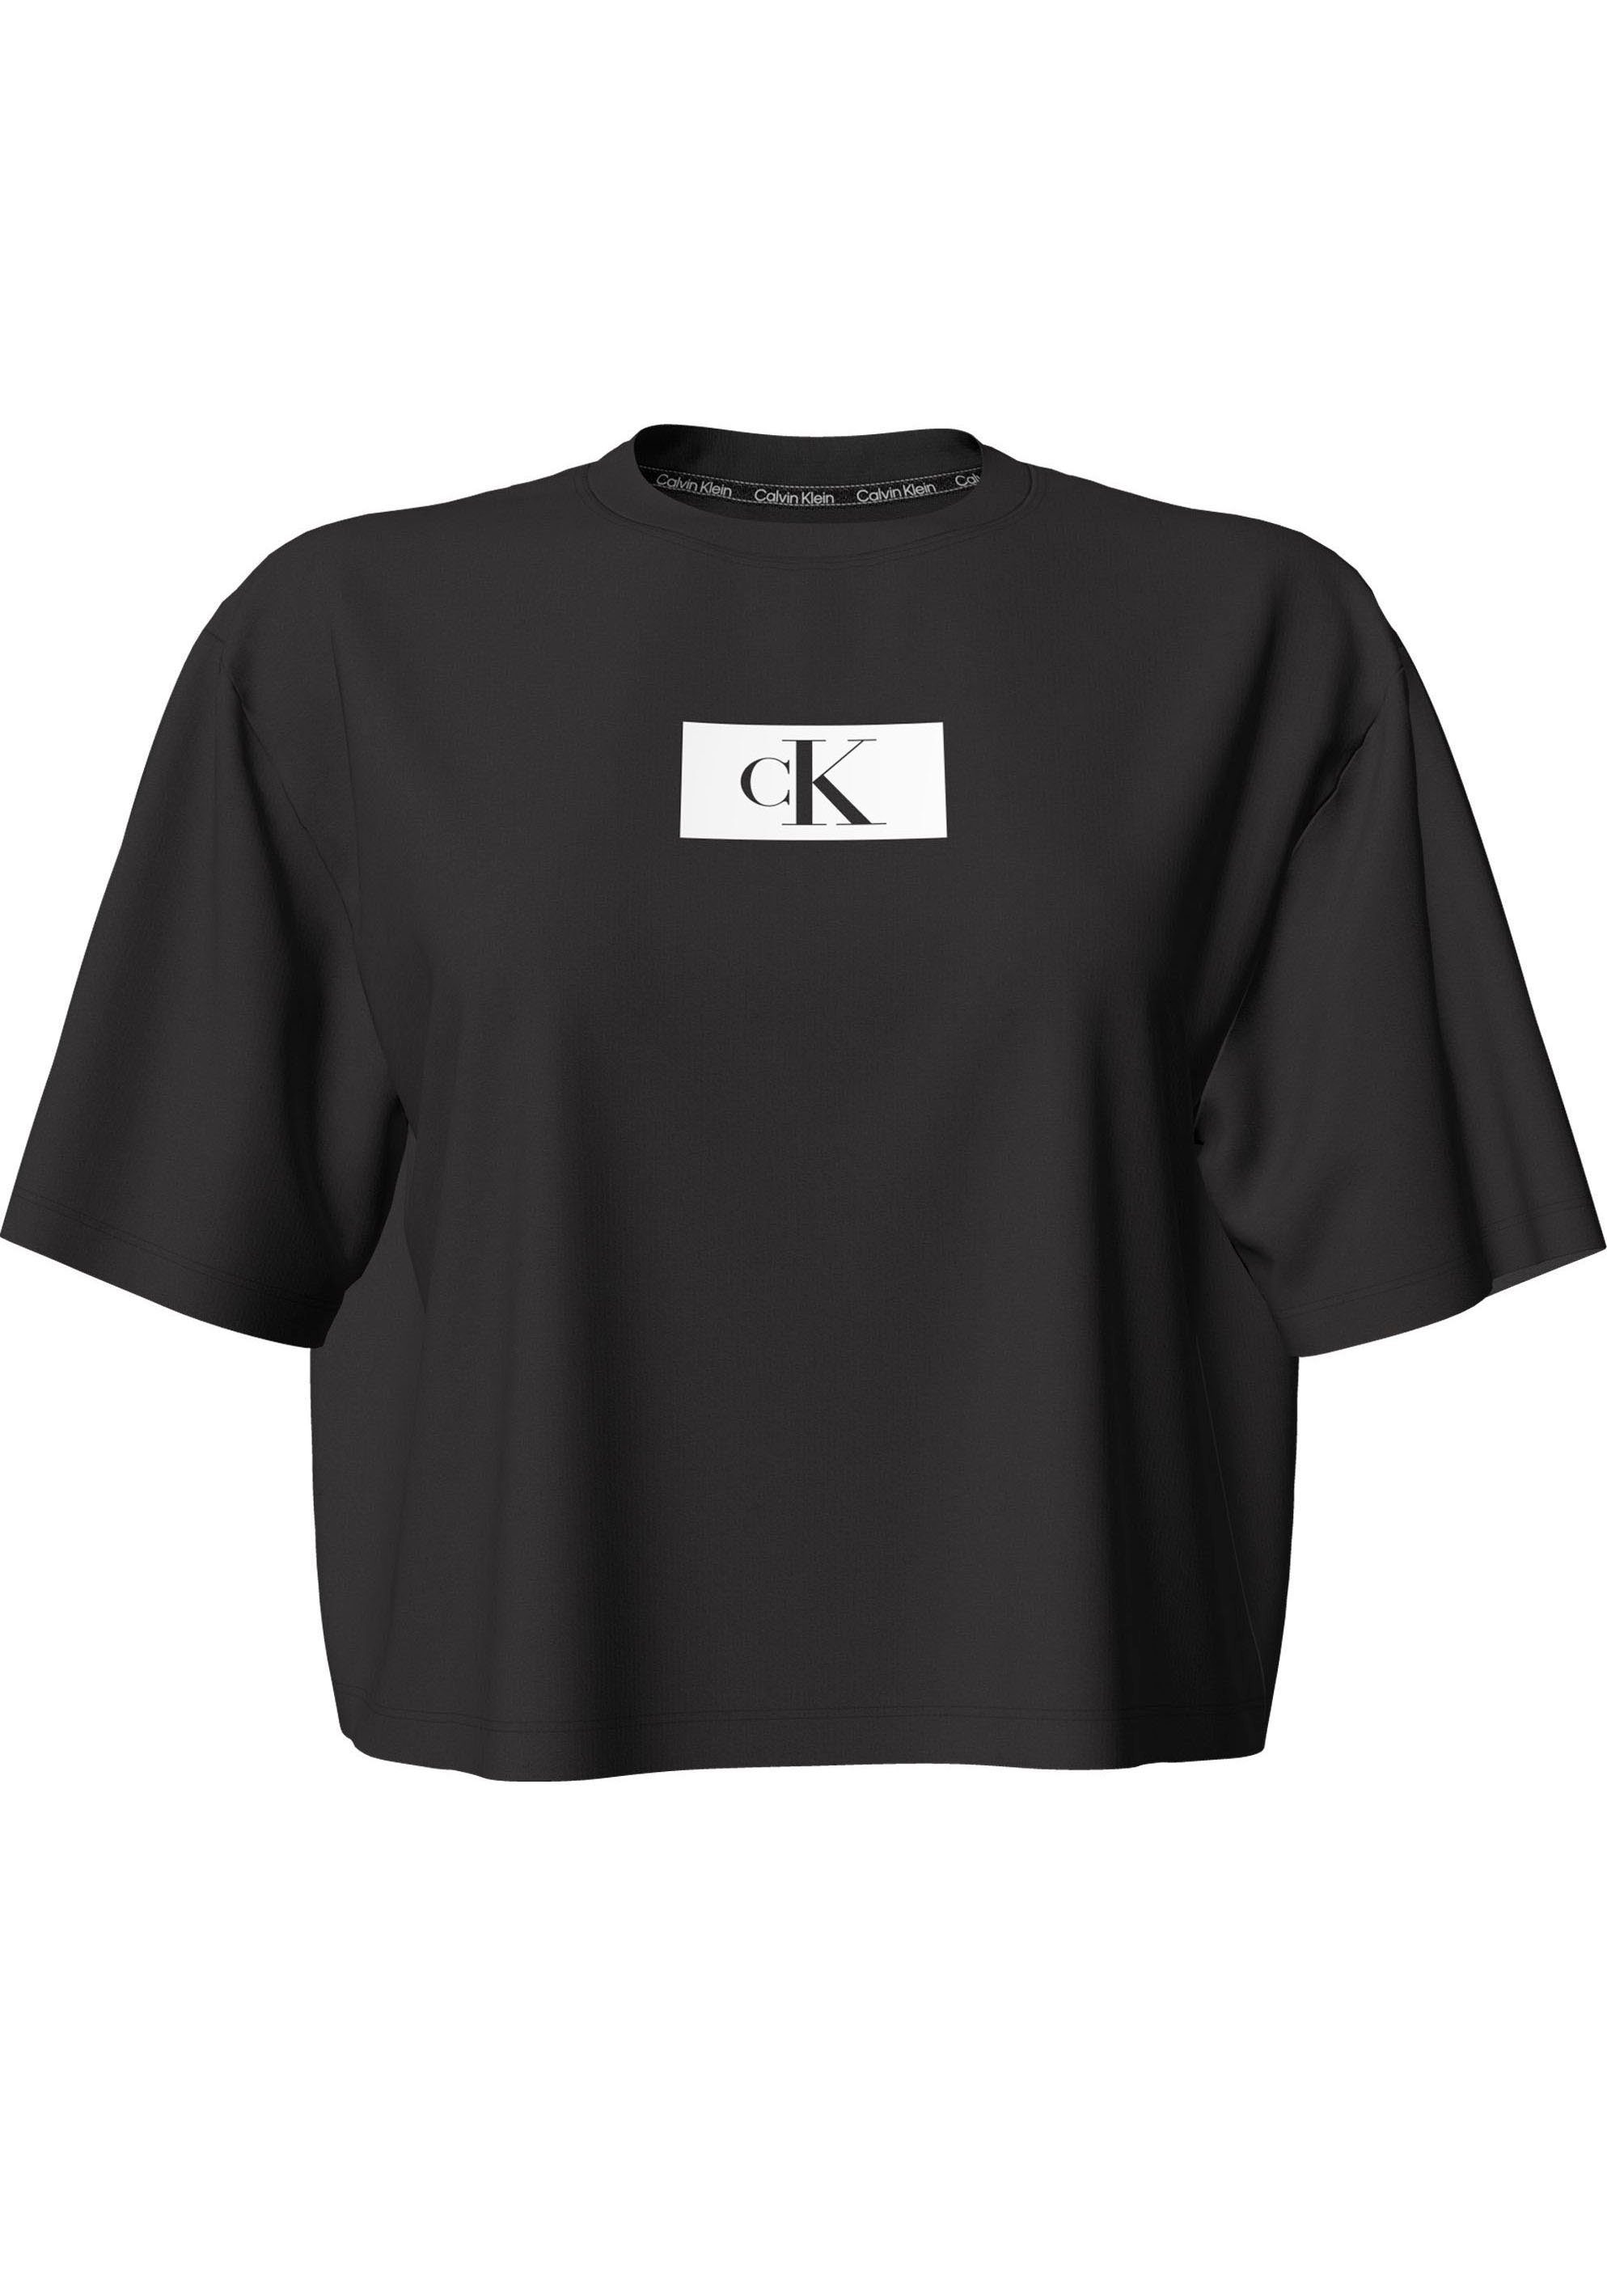 (FF) Kurzarmshirt S/S Klein NECK Calvin CREW Underwear